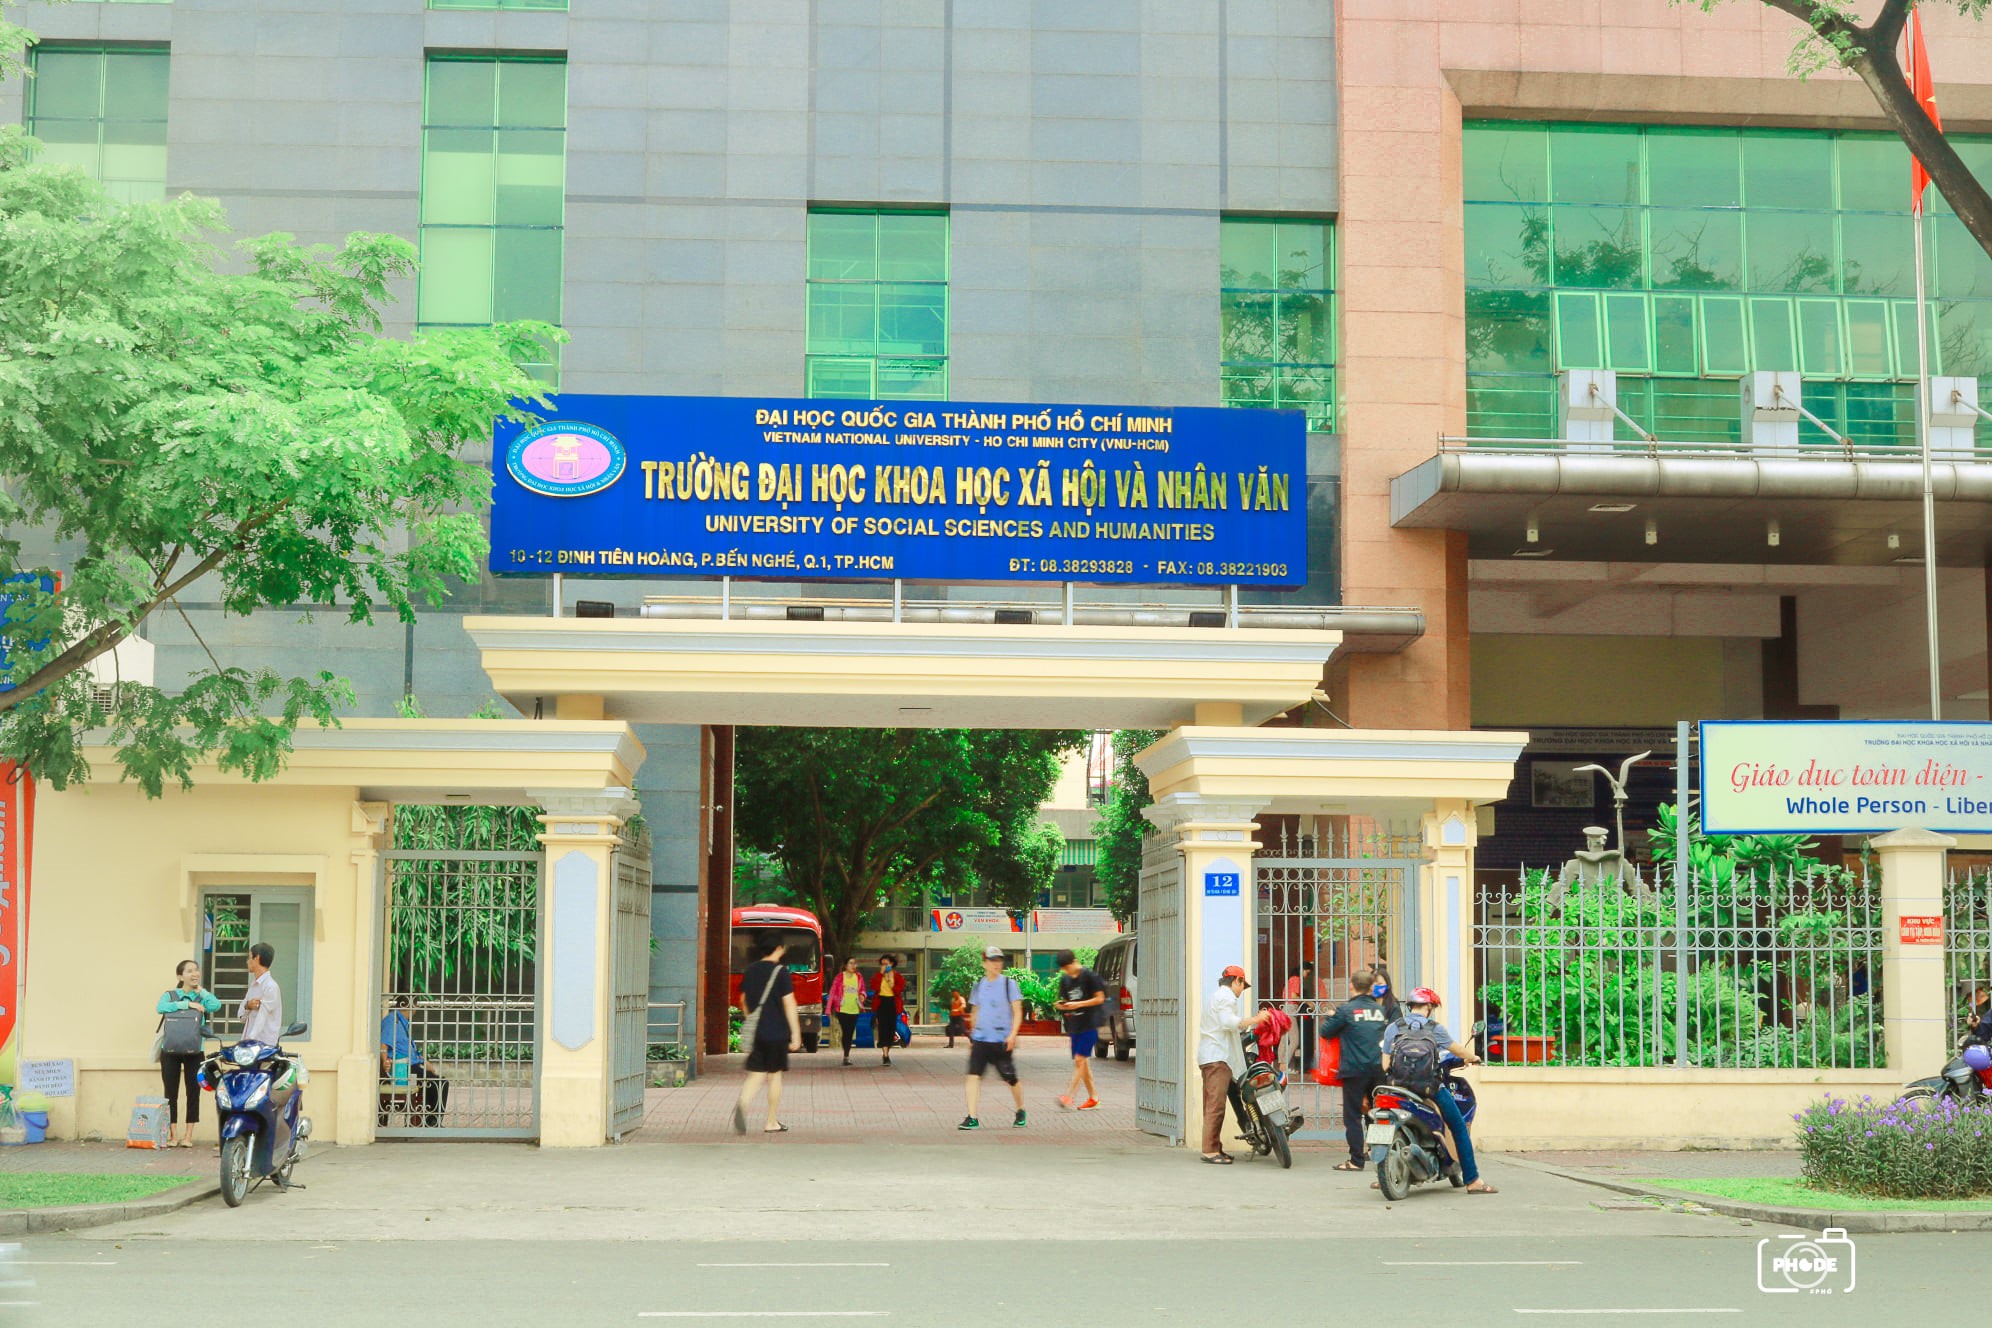 Trường Đại học Khoa học Xã hội và Nhân văn thành phố Hồ Chí Minh sở hữu 2 chuyên ngành đào tạo nhân lực ngành sự kiện